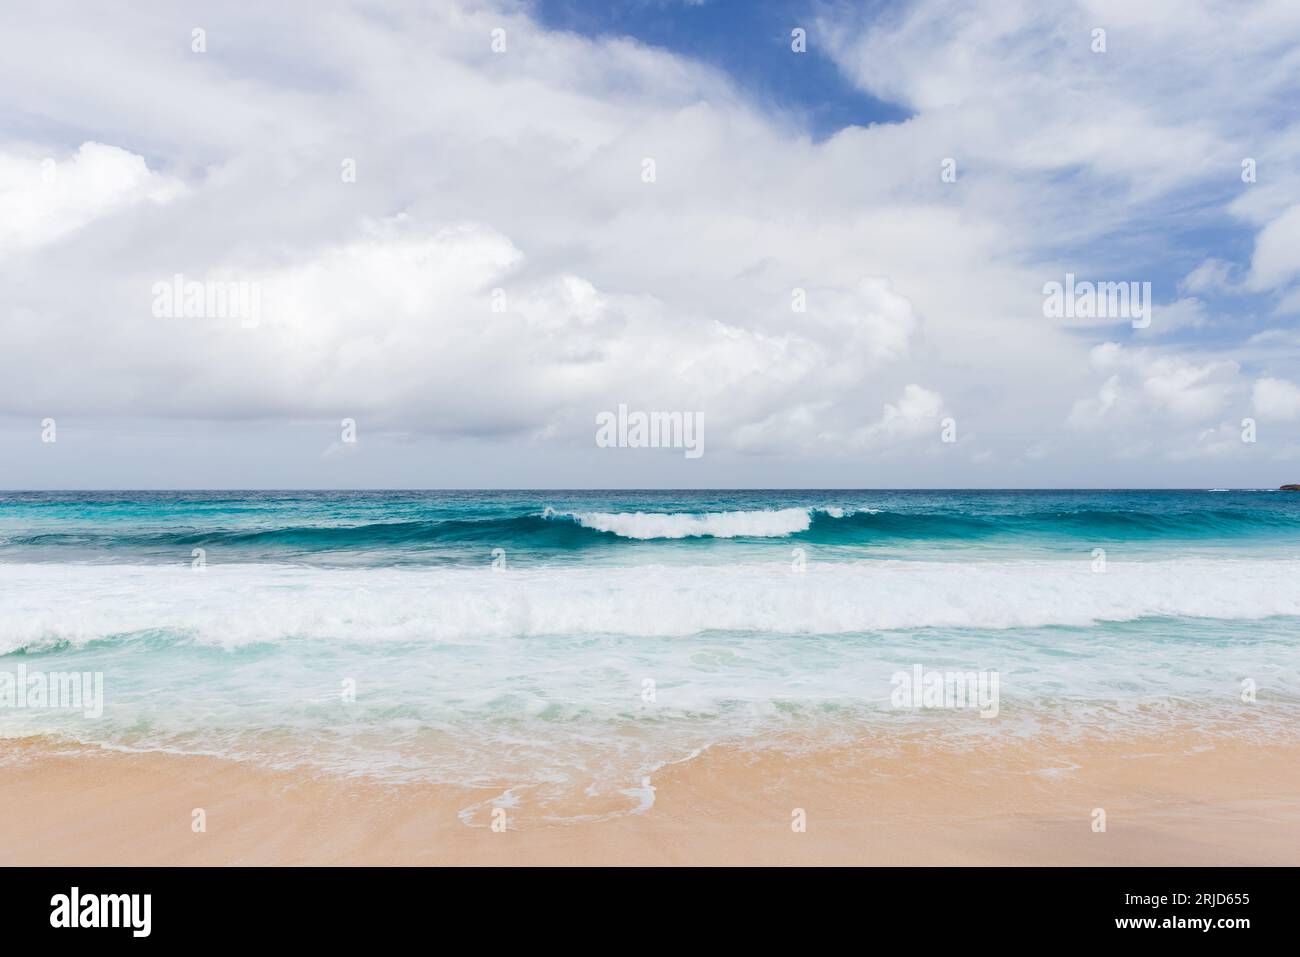 Le onde della costa e la sabbia bianca sono sotto il cielo nuvoloso. Foto del paesaggio della costa oceanica scattata a Anse Intendance Beach, isola di Mahe, Seychelles Foto Stock